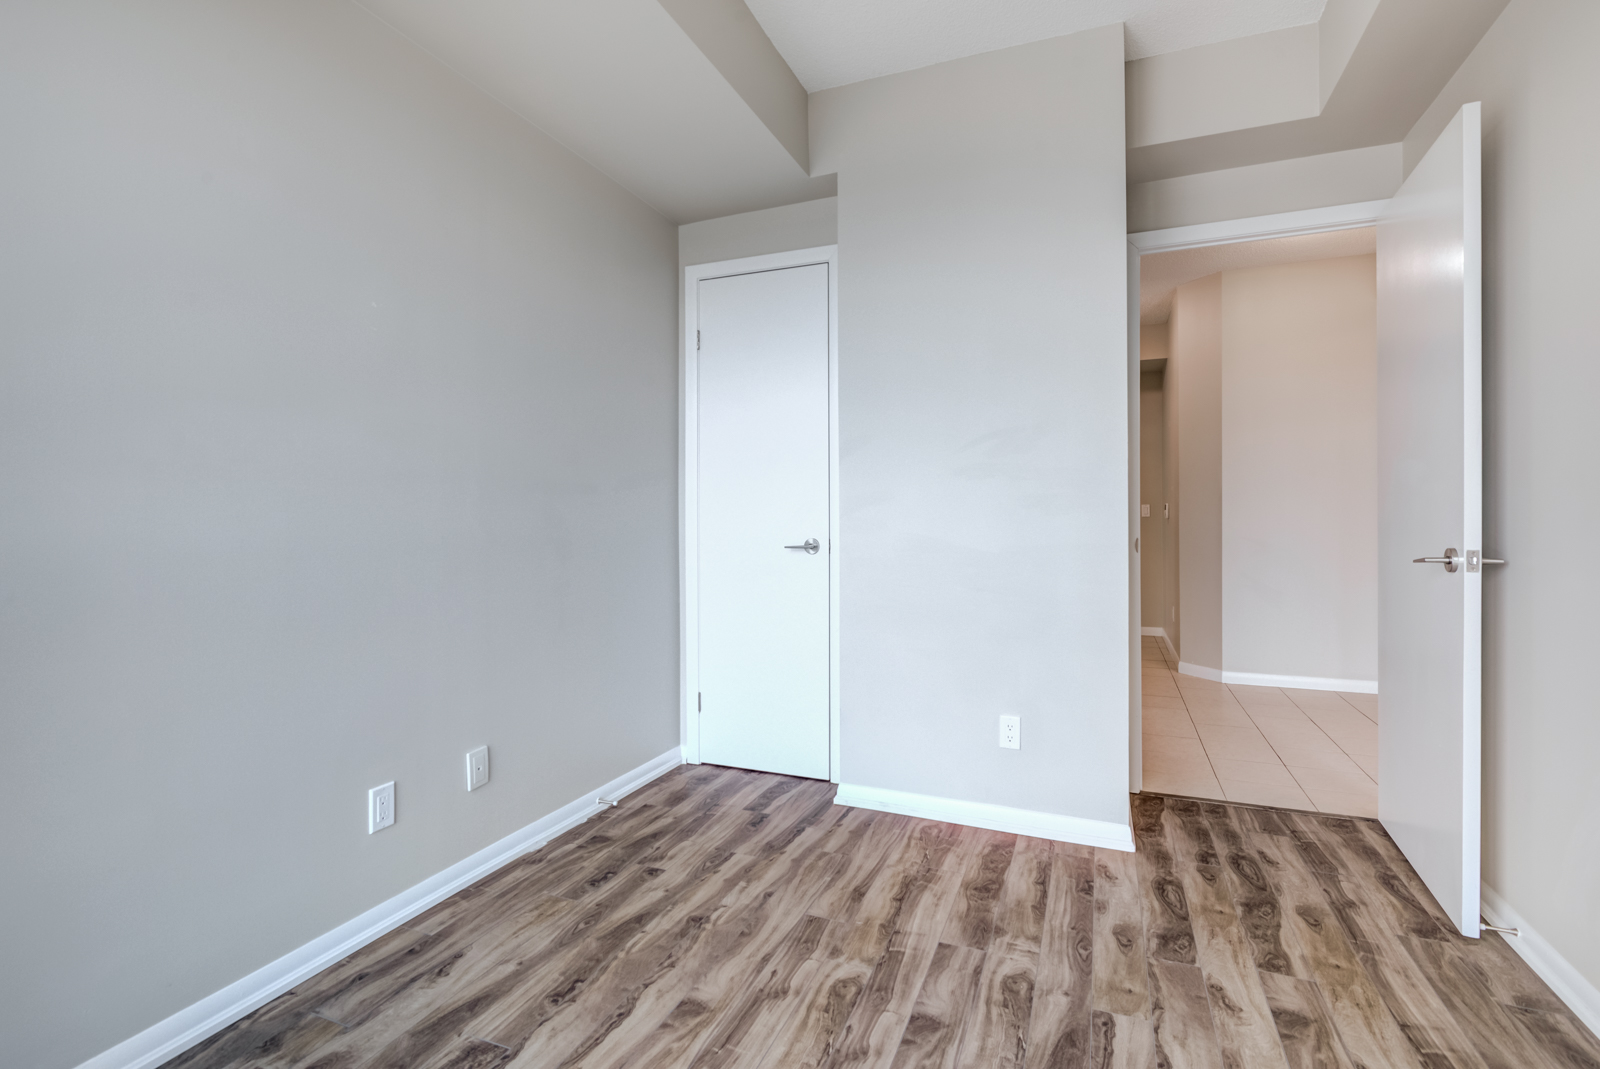 Empty bedroom with dark laminate floors, gray walls and white closet door.